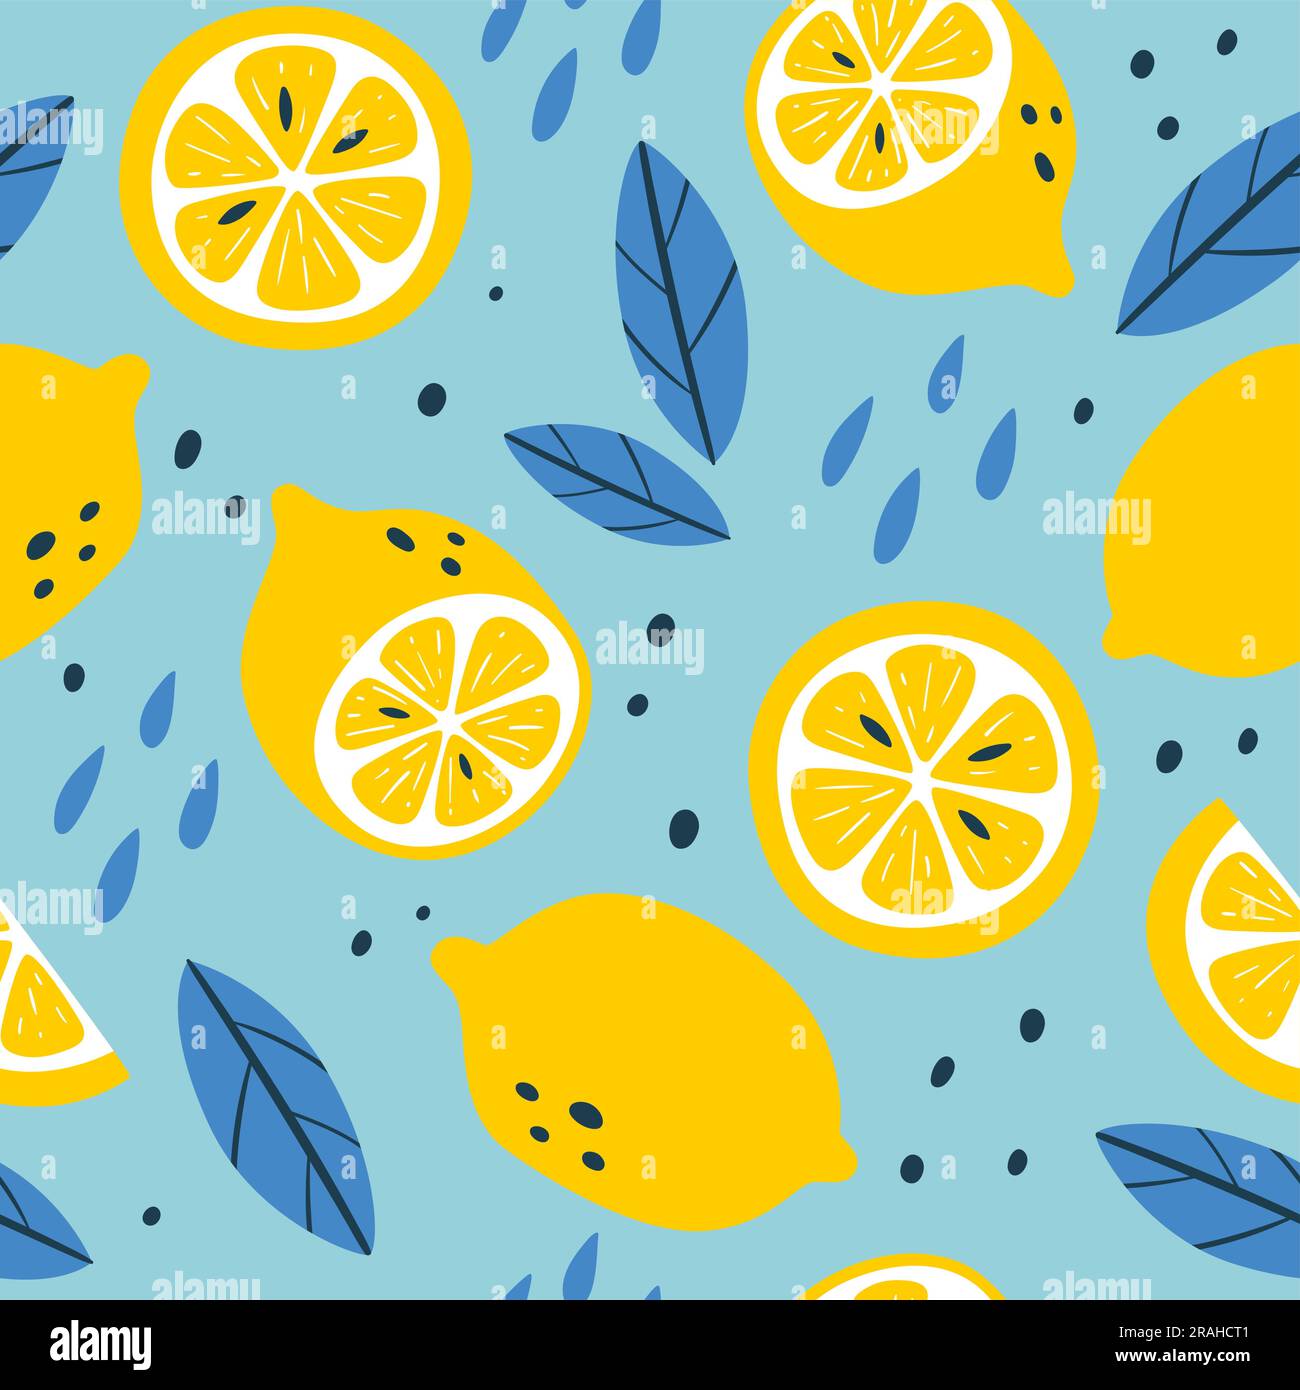 Nahtloses Zitronenfruchtmuster. Quadratisches Wiederholungsmuster mit Zitronen, Scheiben und Blättern. Zusammensetzung Gelb und Blau. Flaches Vektormuster. Stock Vektor